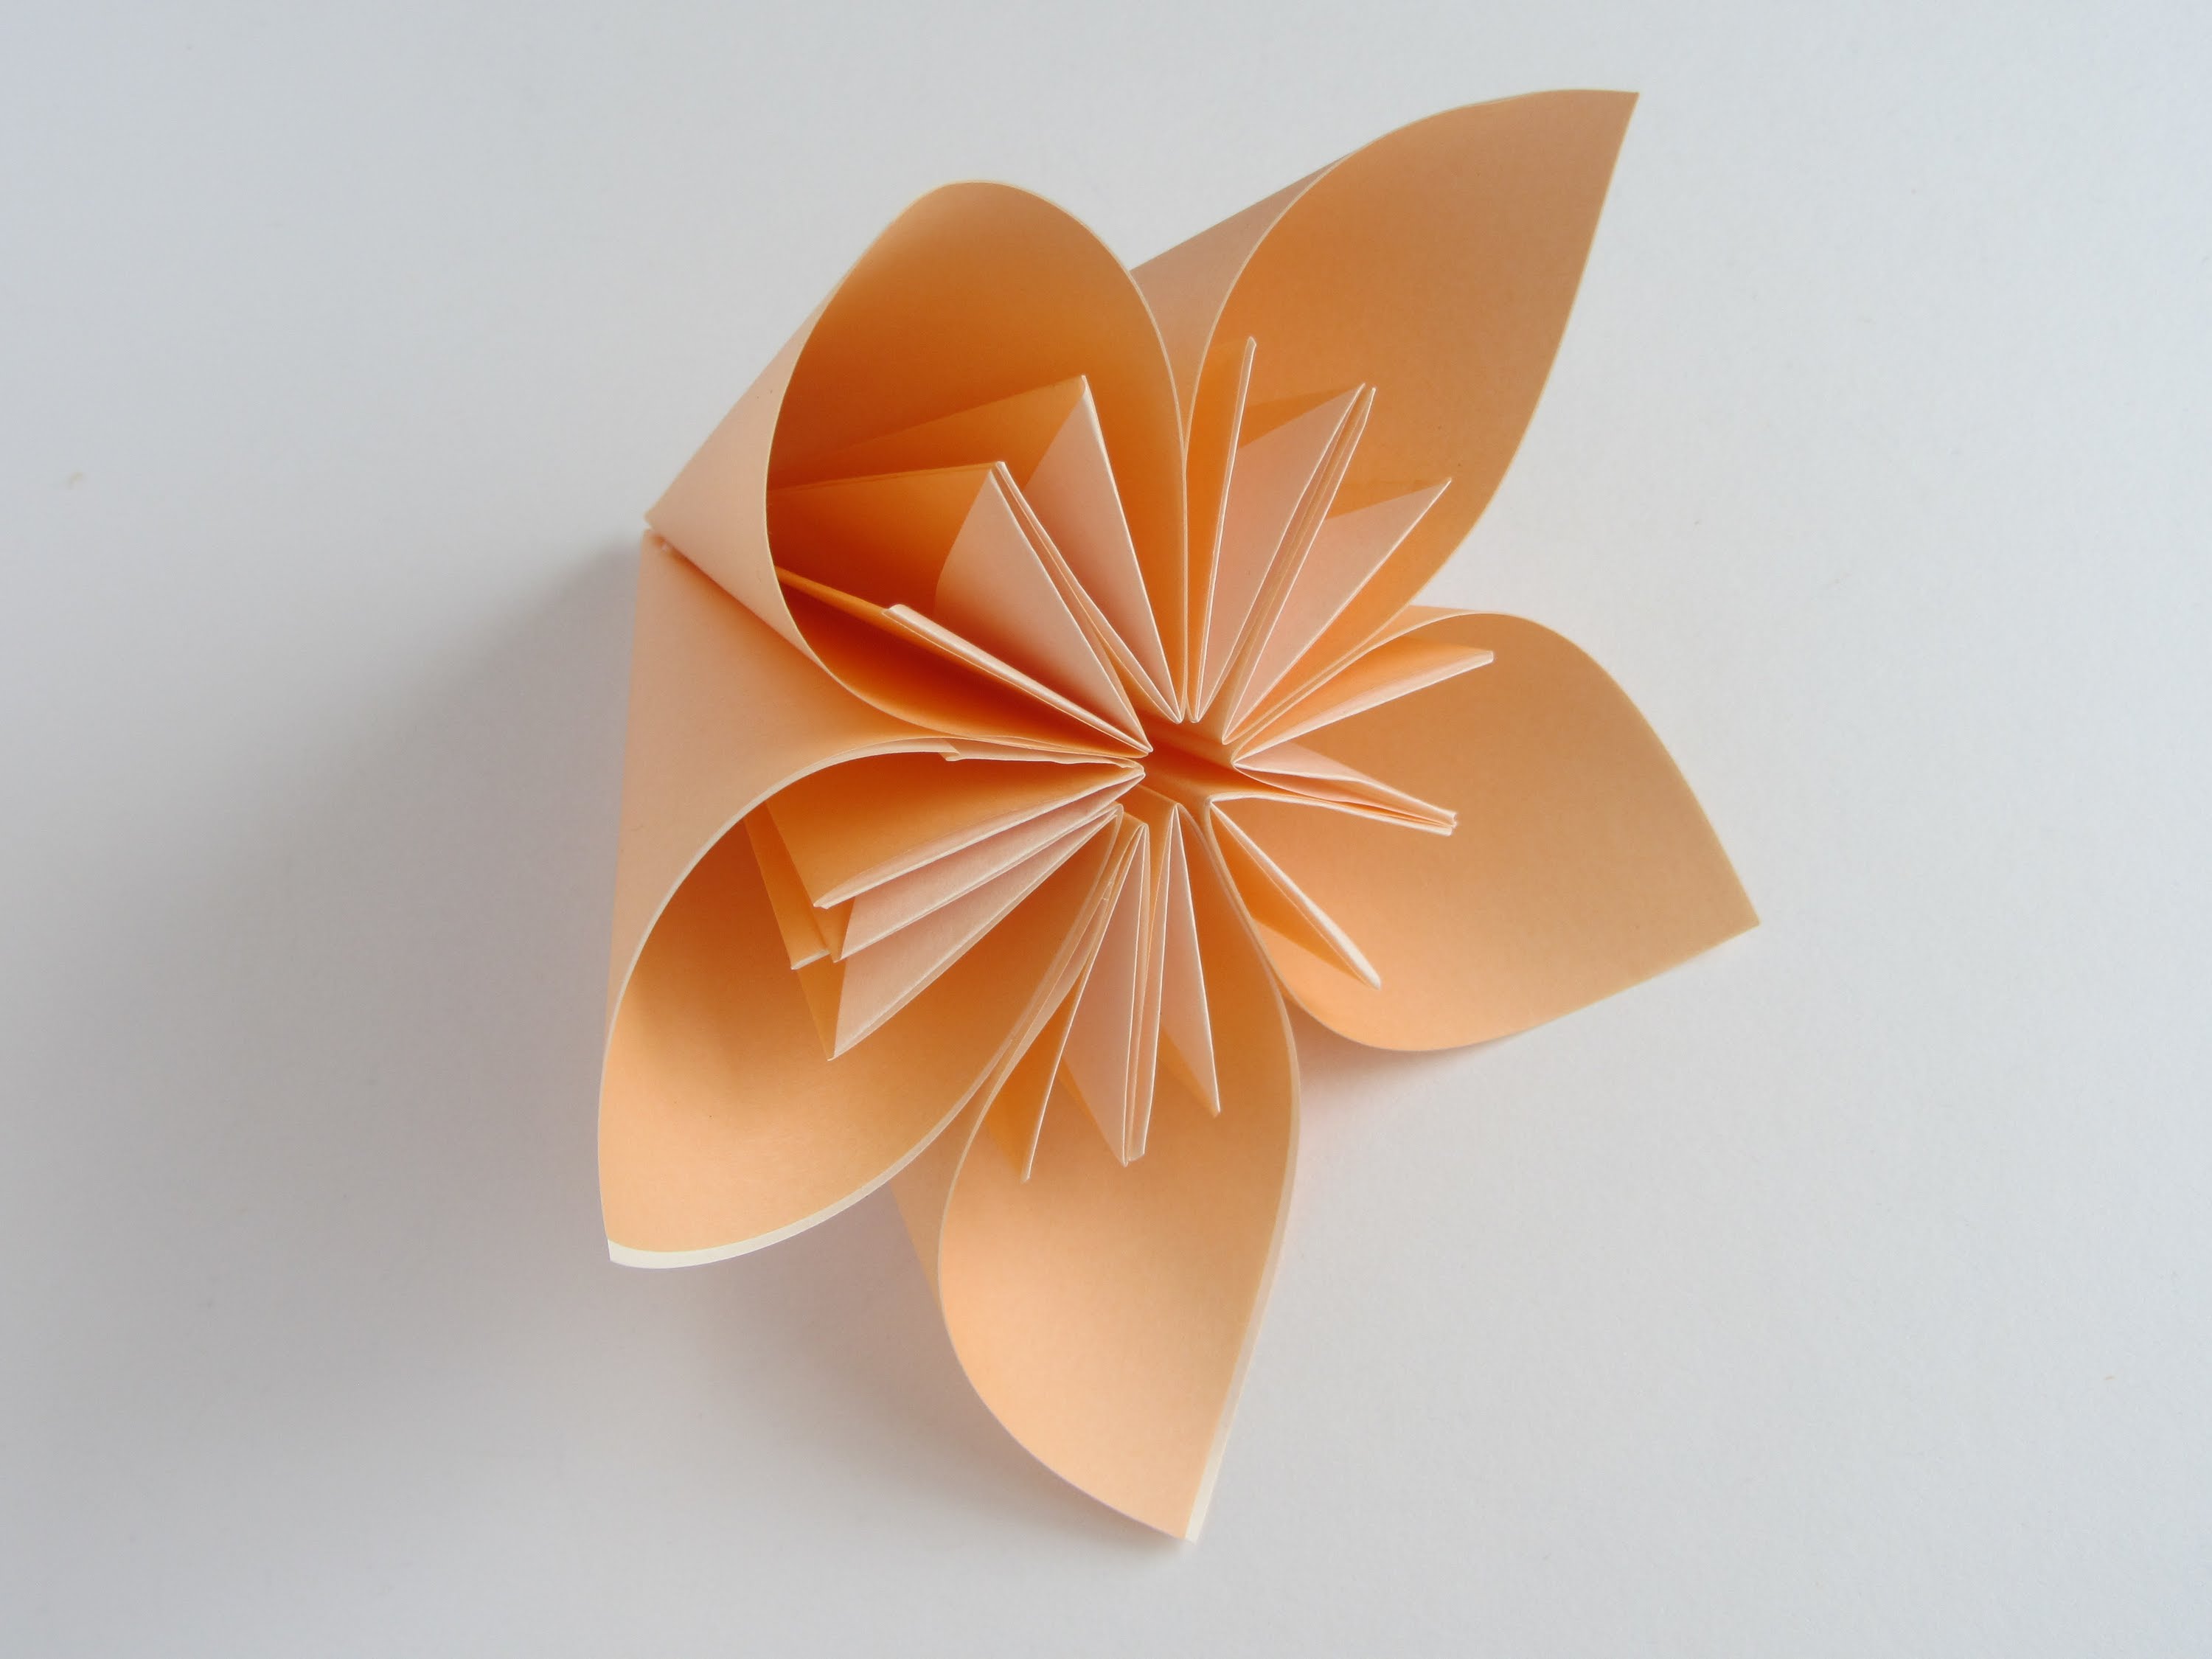 kieg-sz-t-s-t-lt-zni-munka-formas-de-origami-gazat-kar-csony